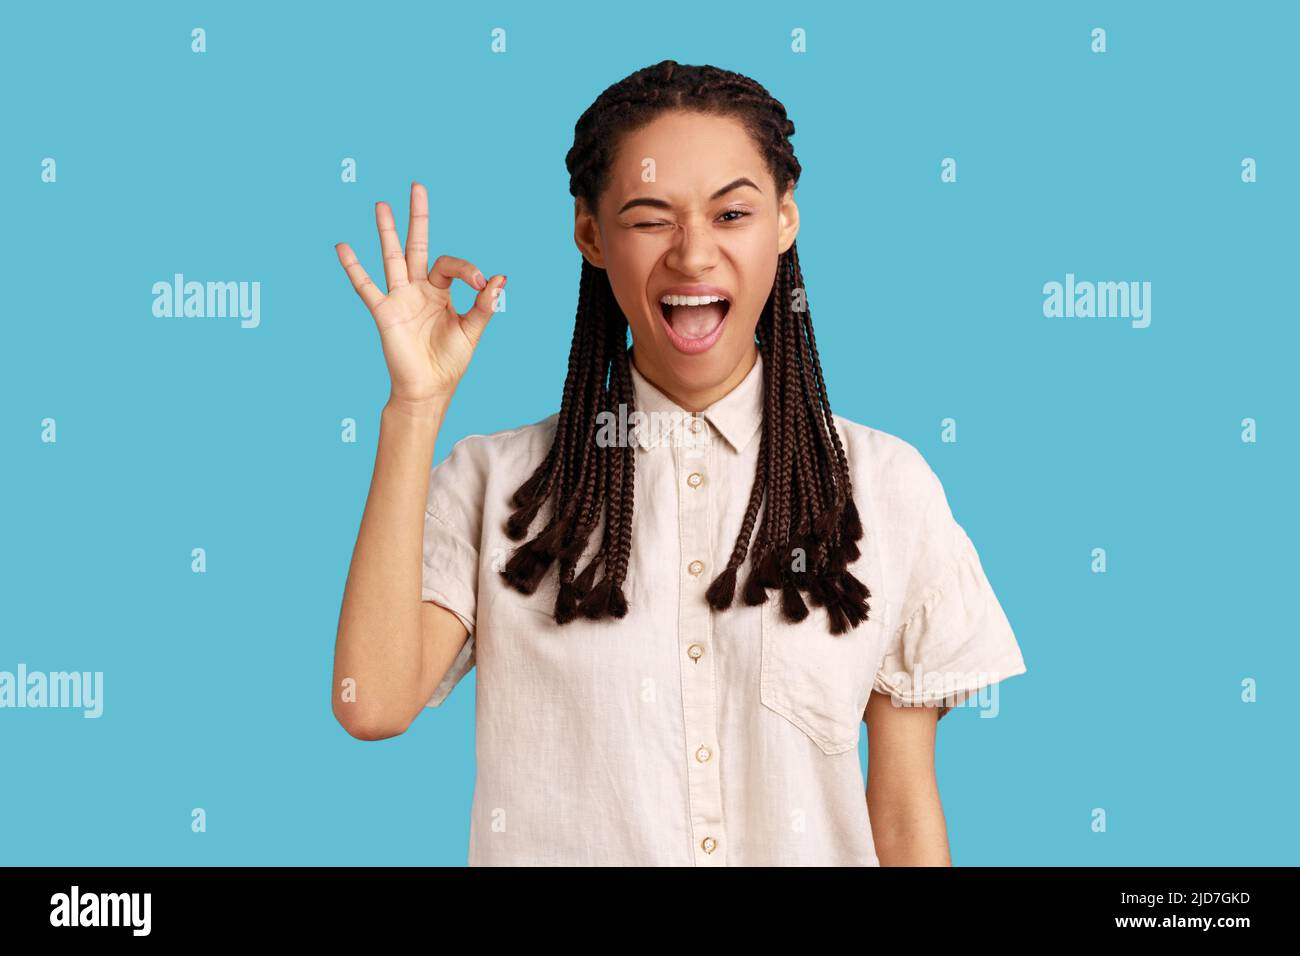 Portrait einer fröhlichen jungen erwachsenen Frau mit schwarzen Dreadlocks, die ein gutes Zeichen zeigt, versichert, dass alles in Ordnung ist, sieht gerne aus, trägt weißes Hemd. Innenaufnahme des Studios isoliert auf blauem Hintergrund. Stockfoto